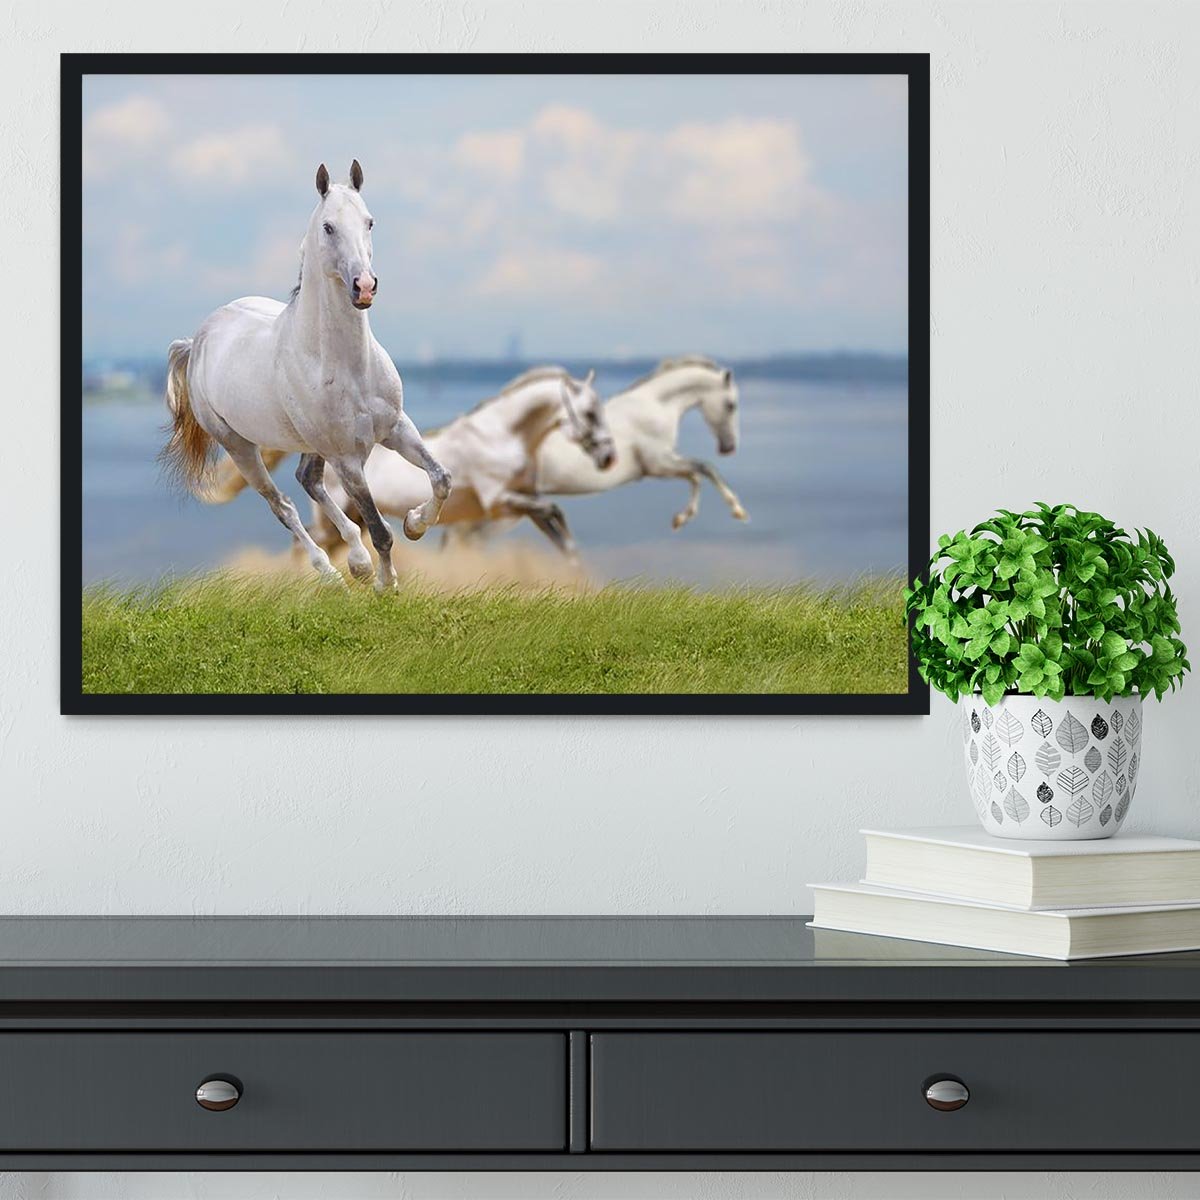 White horses running near water Framed Print - Canvas Art Rocks - 2